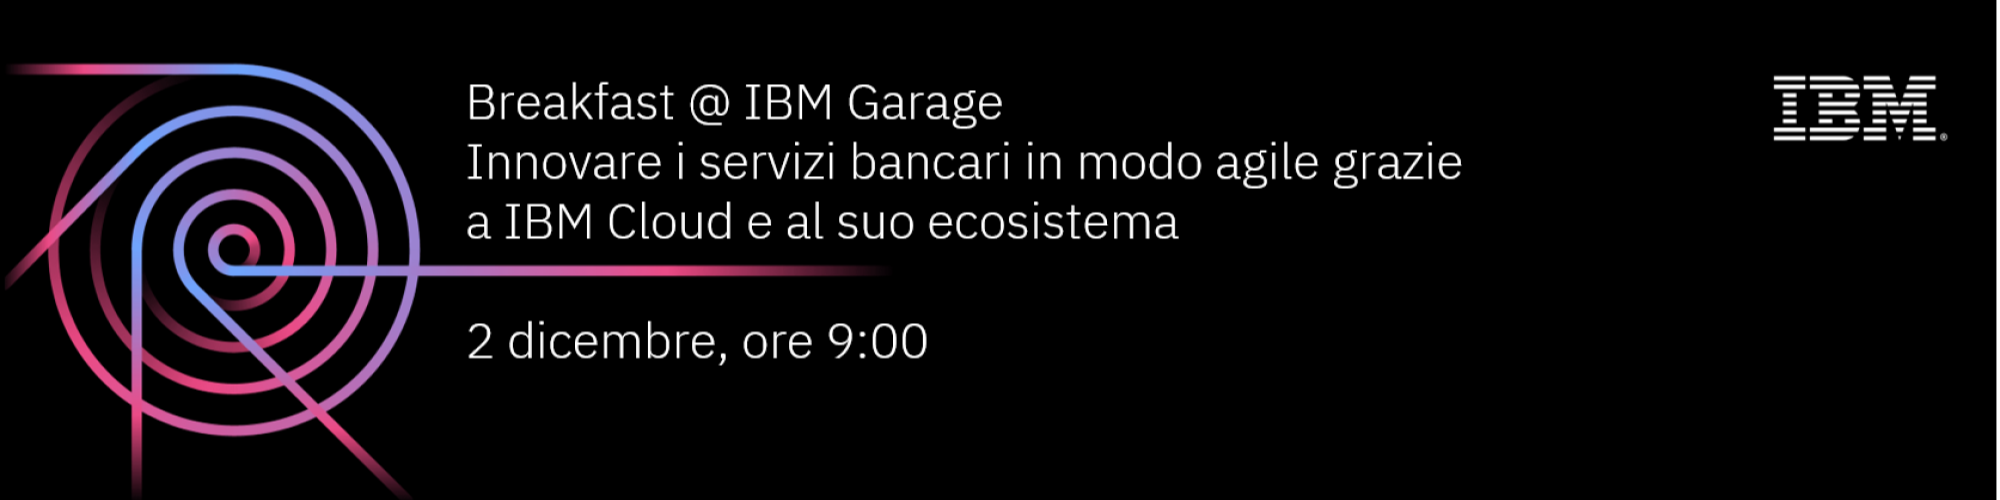 Breakfast@IBM Garage